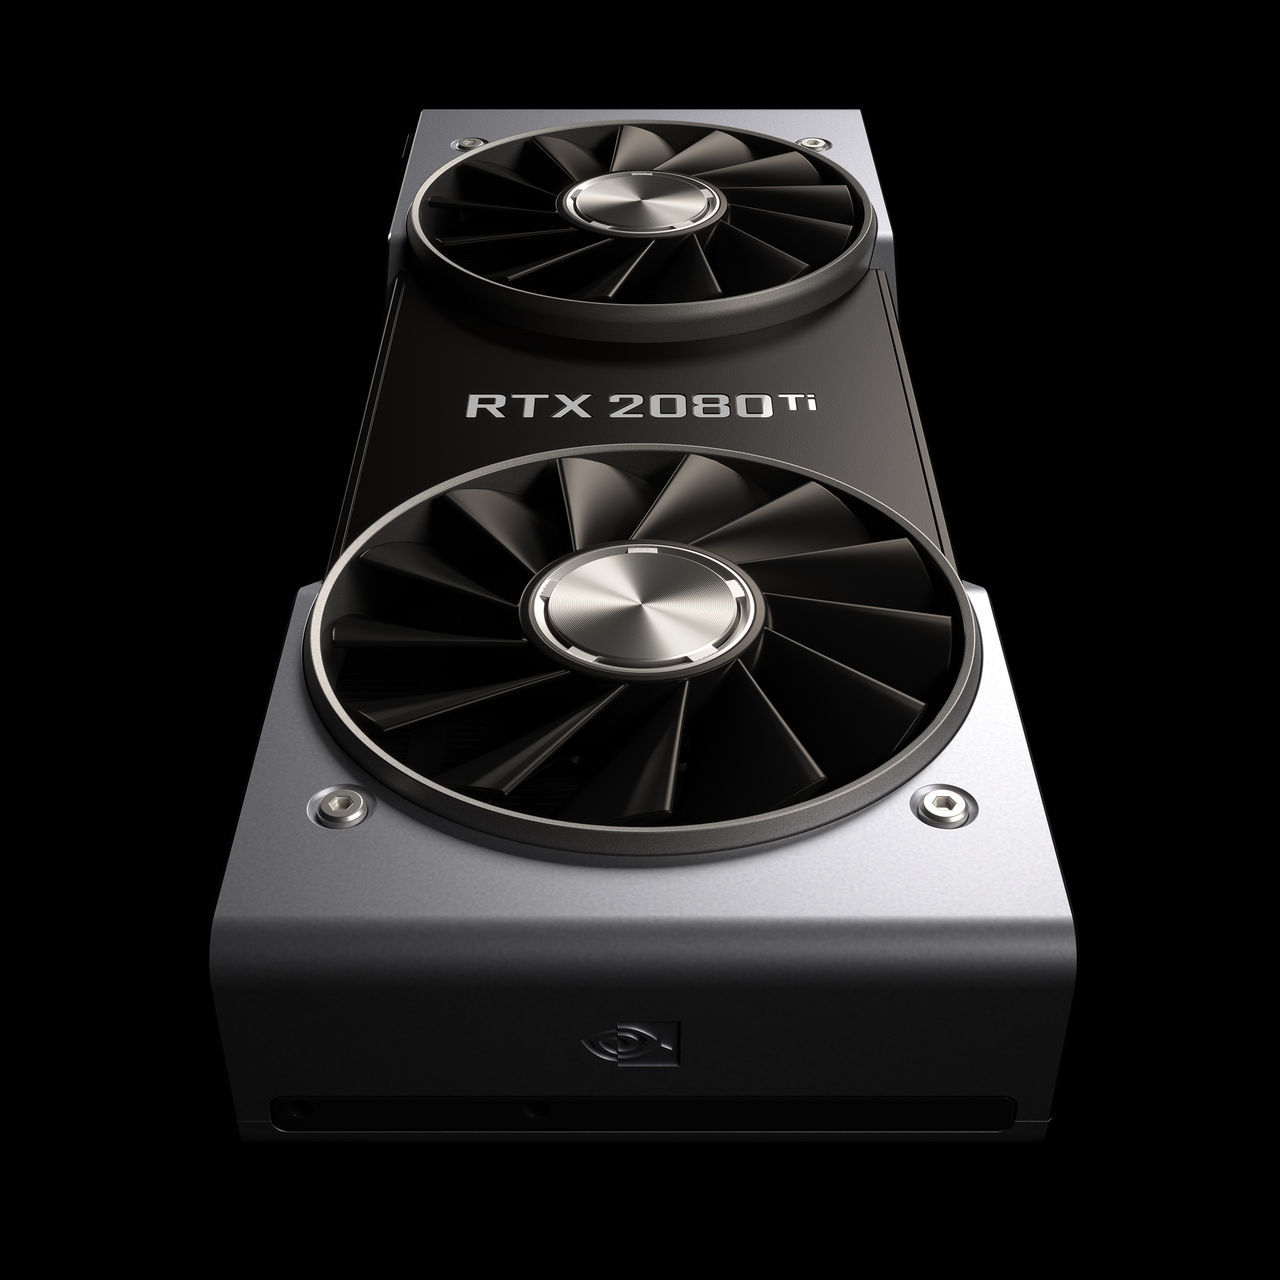 NVIDIA GeForce RTX 2080 TI sale el 20 de septiembre y costará 1259 euros